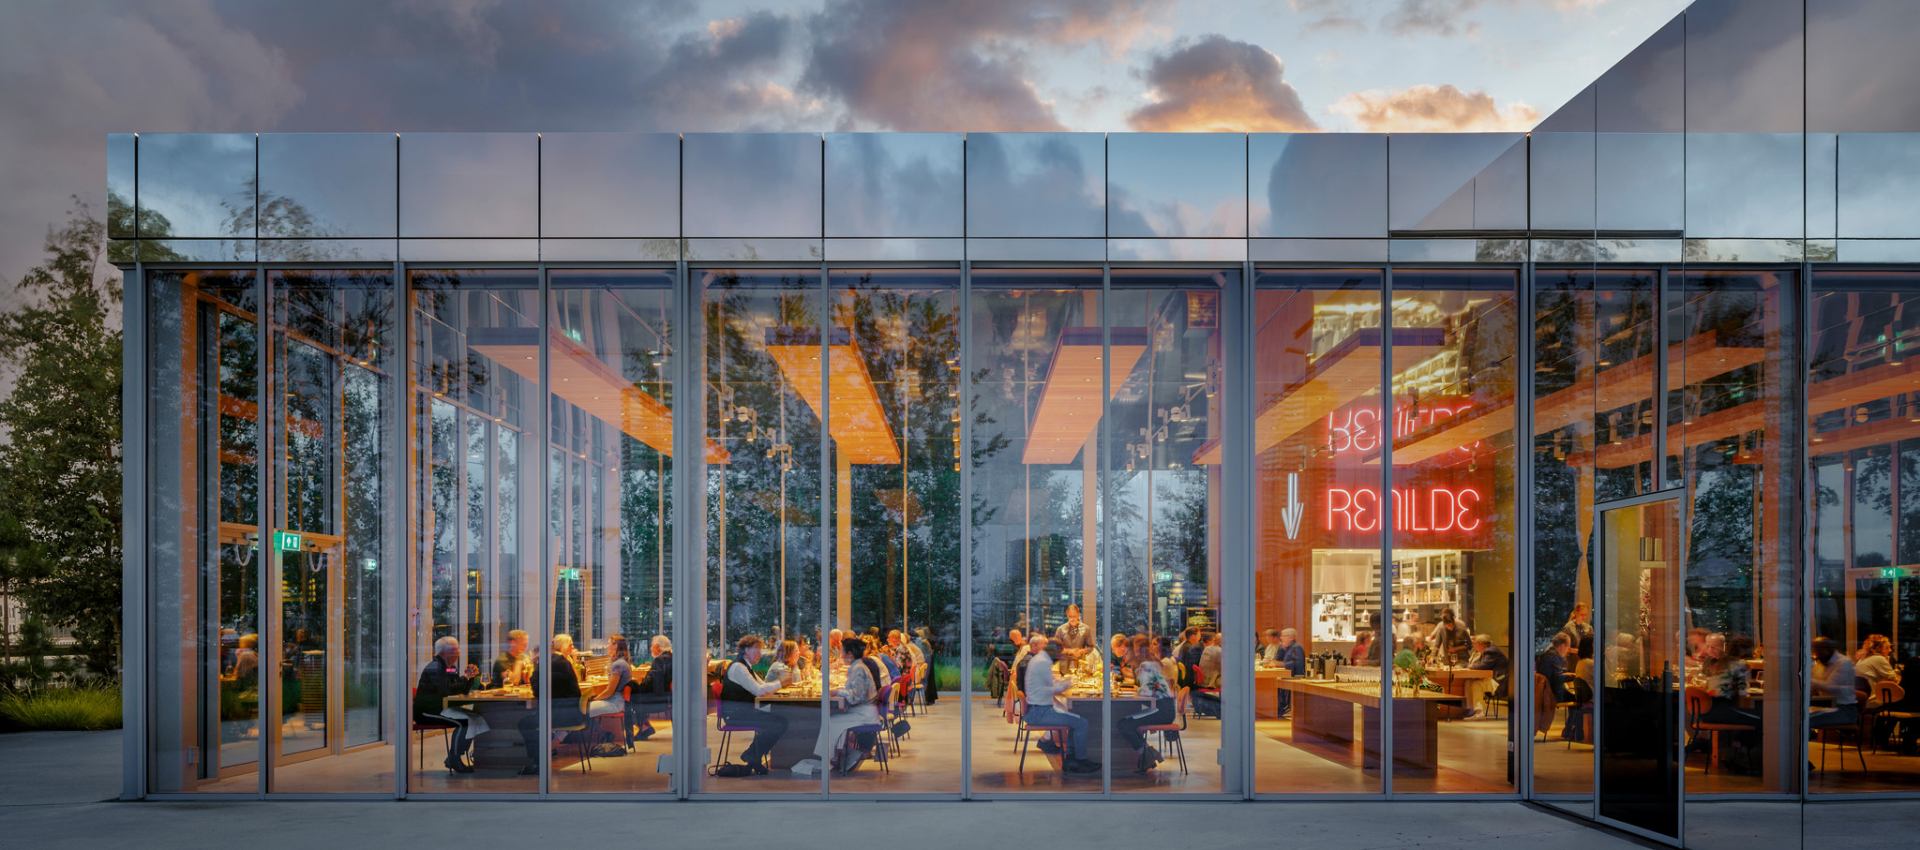 Restaurante Renilde no Depot Boijmans van Beuningen por Concrete |  Sobre Arquitetura e muito mais